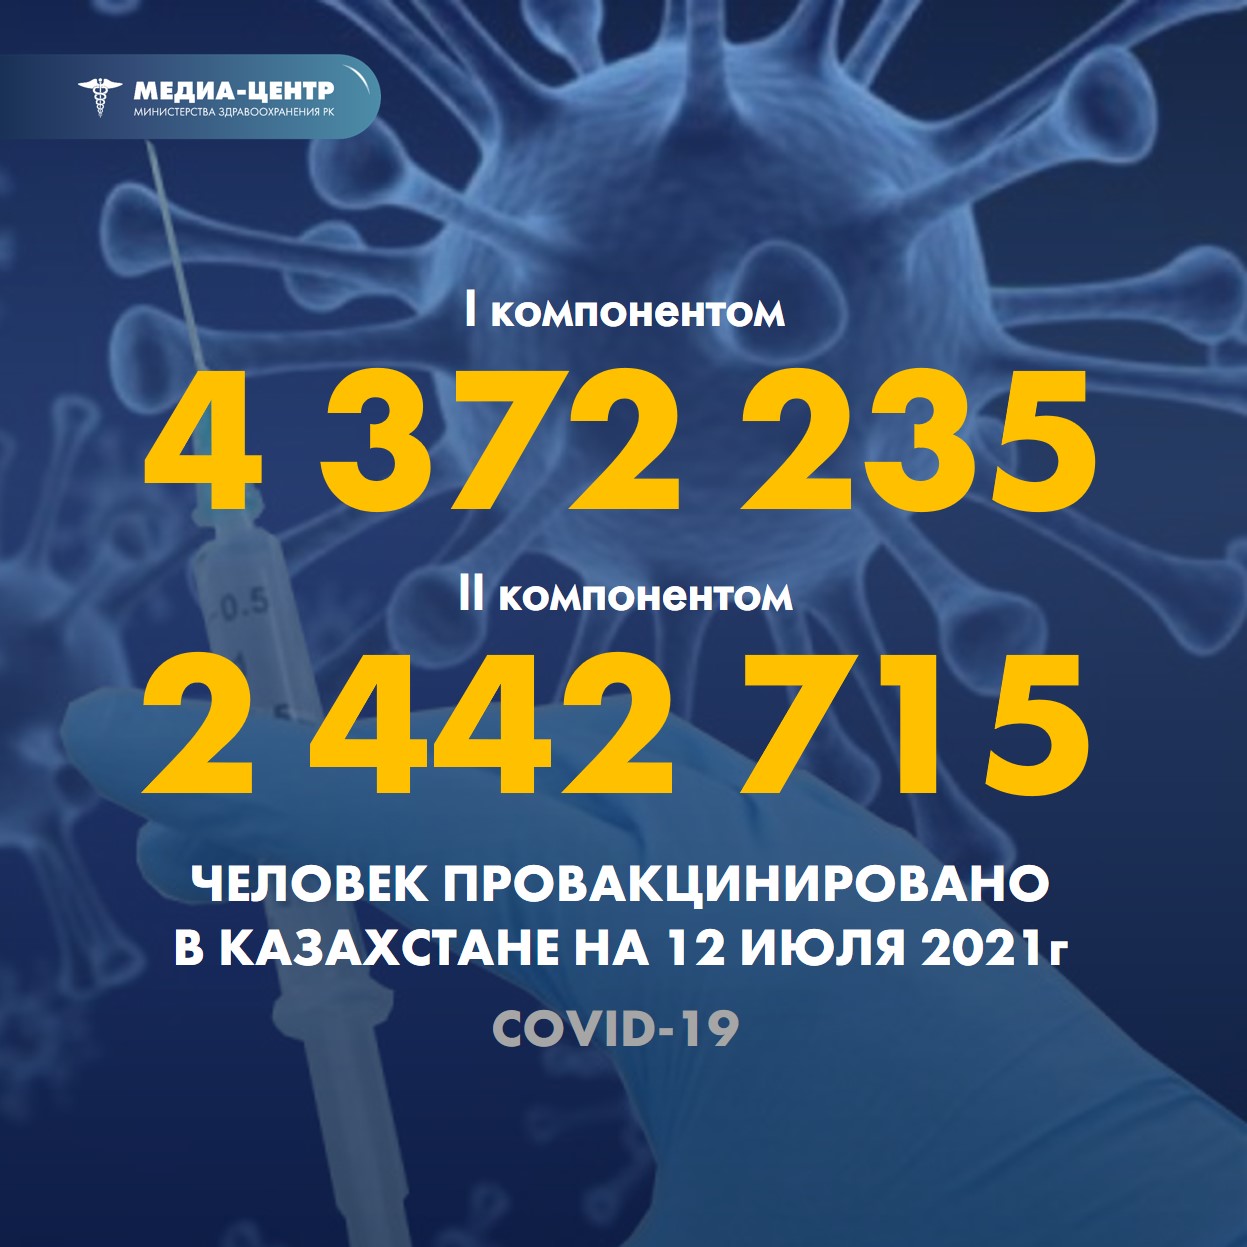 Информация о проведении вакцинации населения против КВИ на 12.07.2021 г. в разрезе регионов